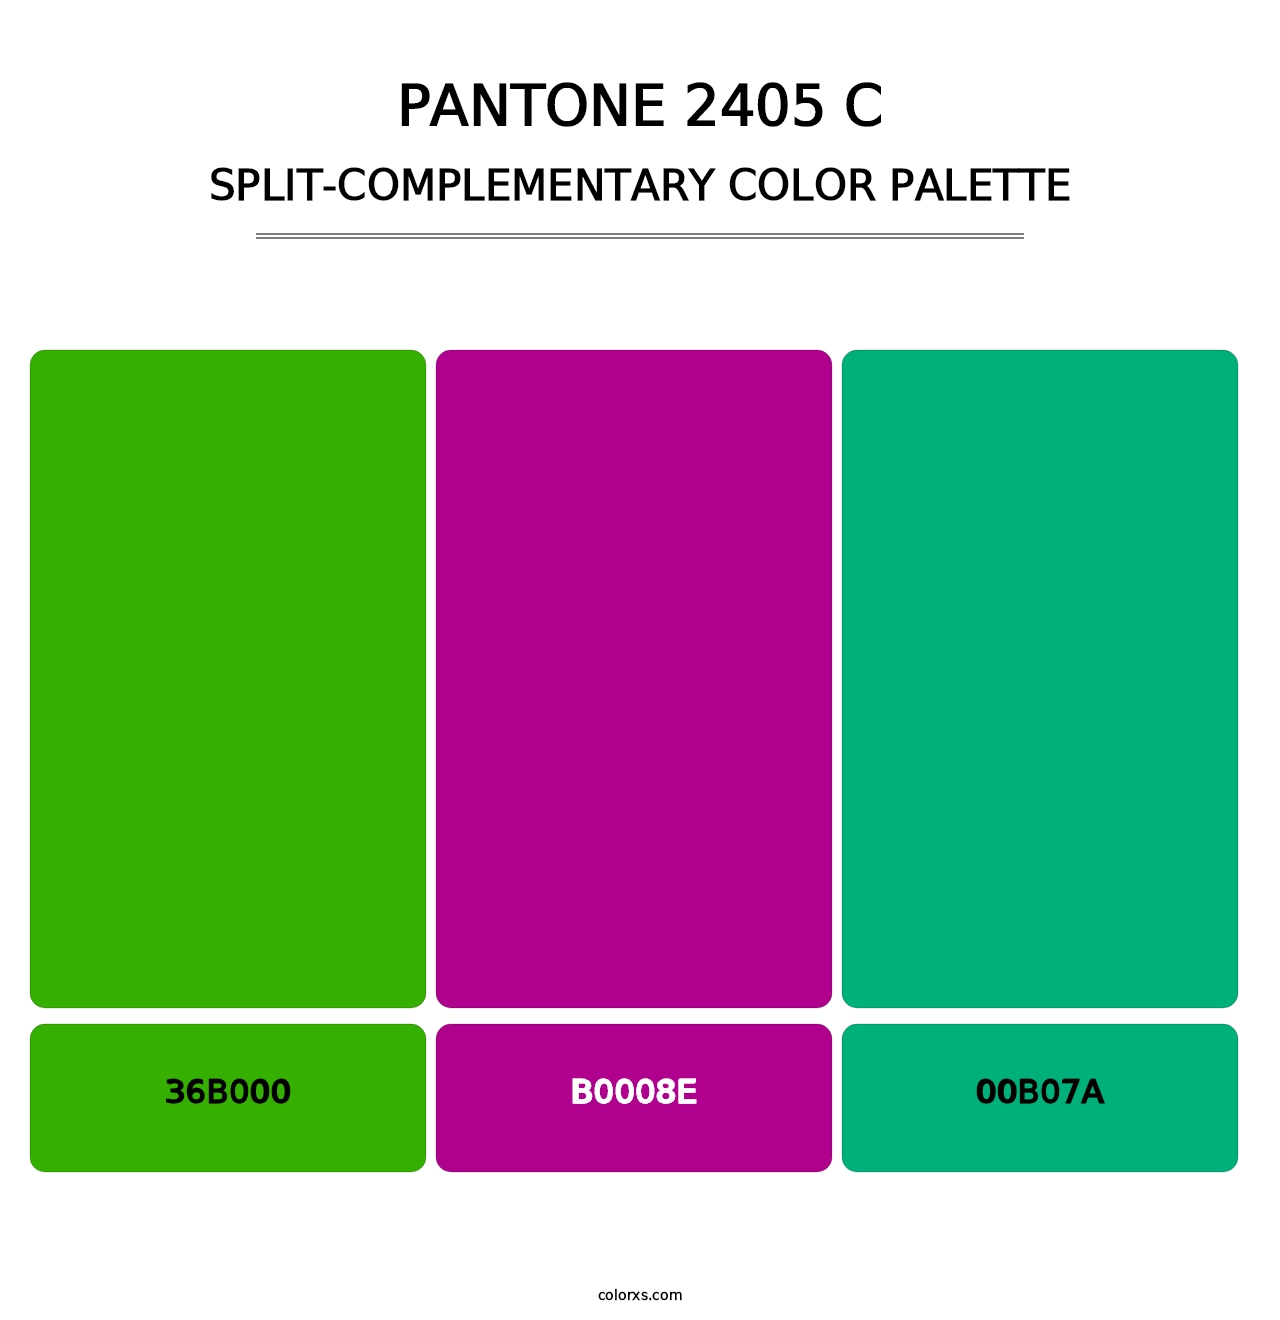 PANTONE 2405 C - Split-Complementary Color Palette